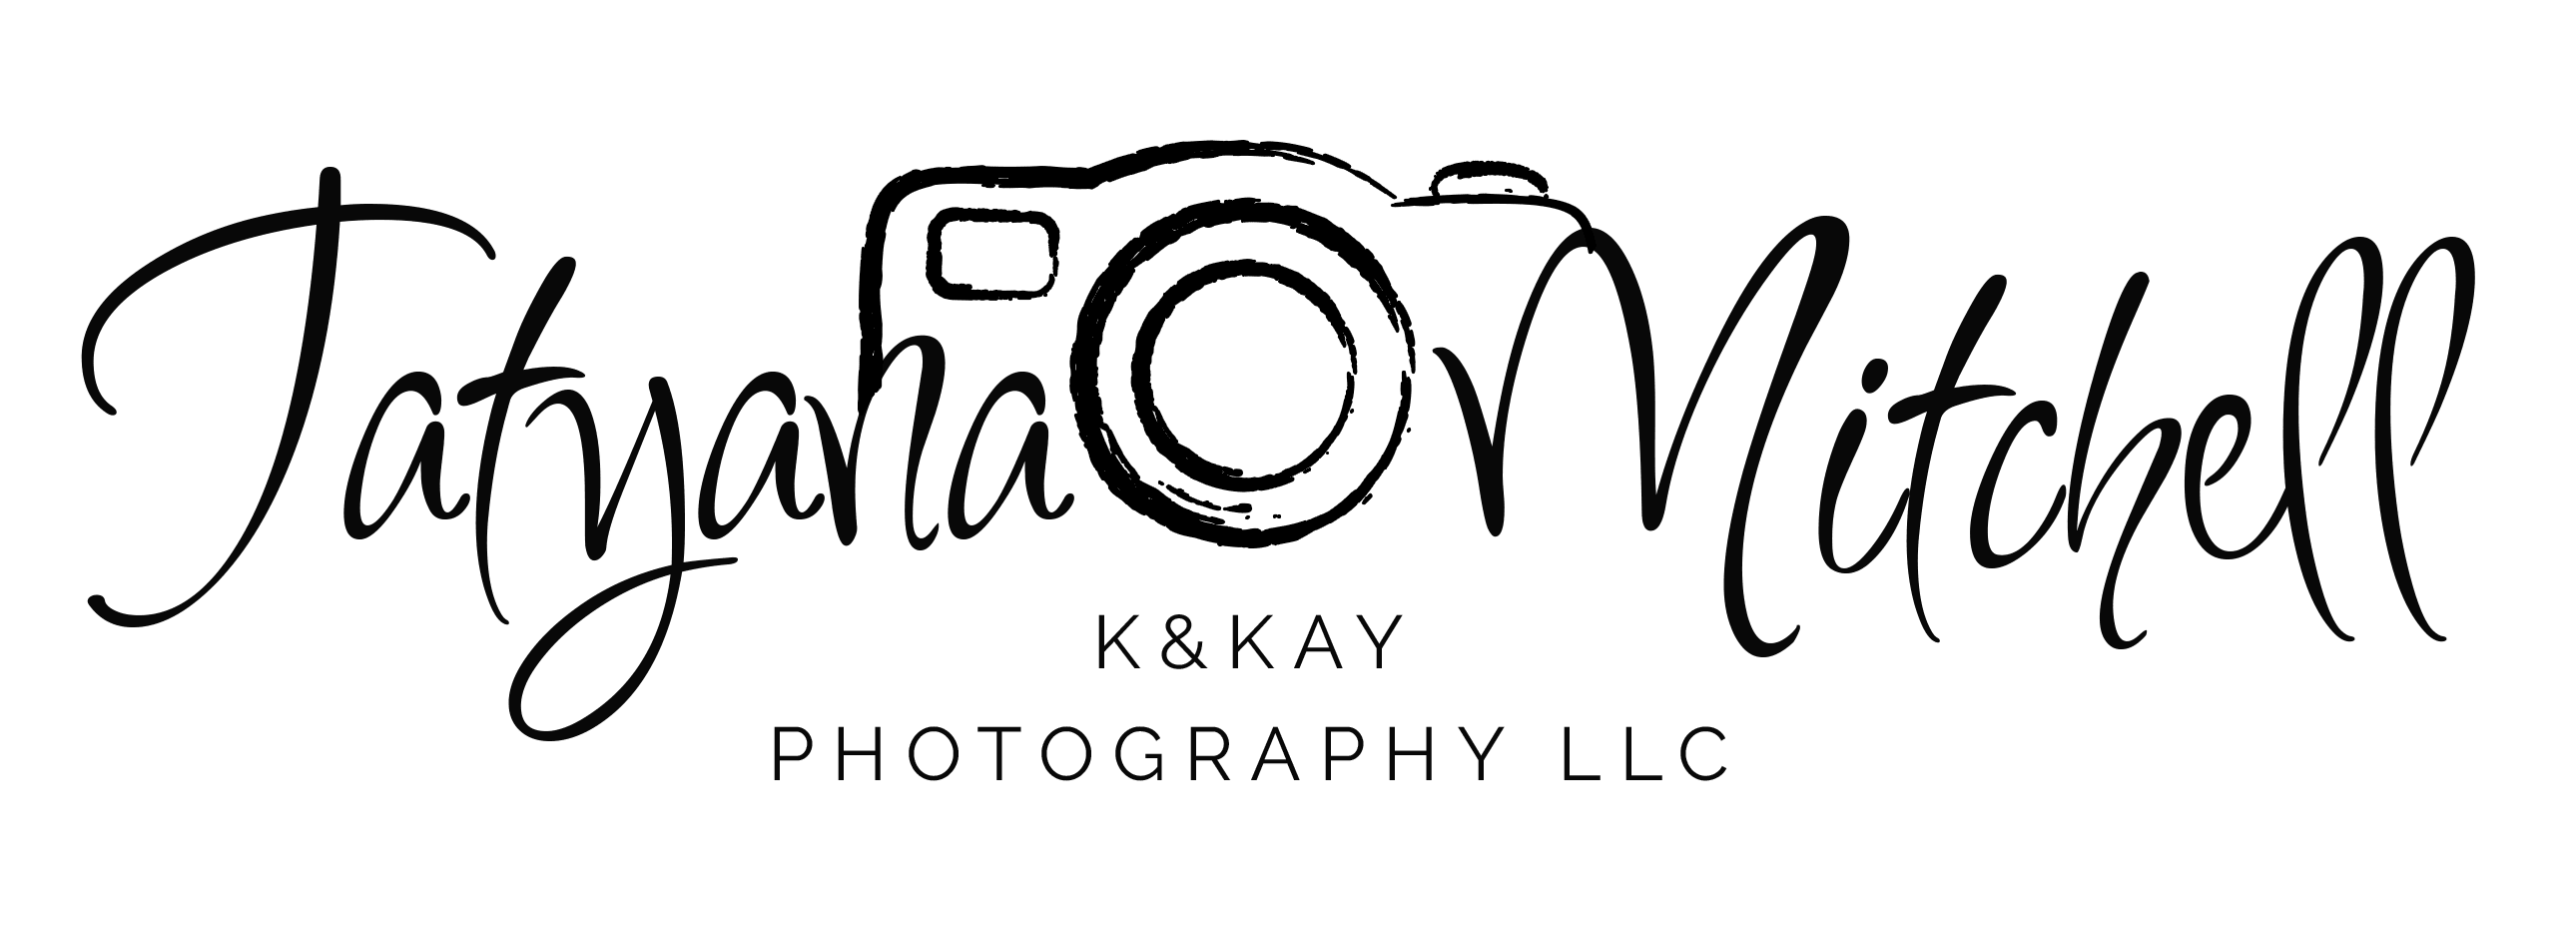 K&Kay Photography LLC